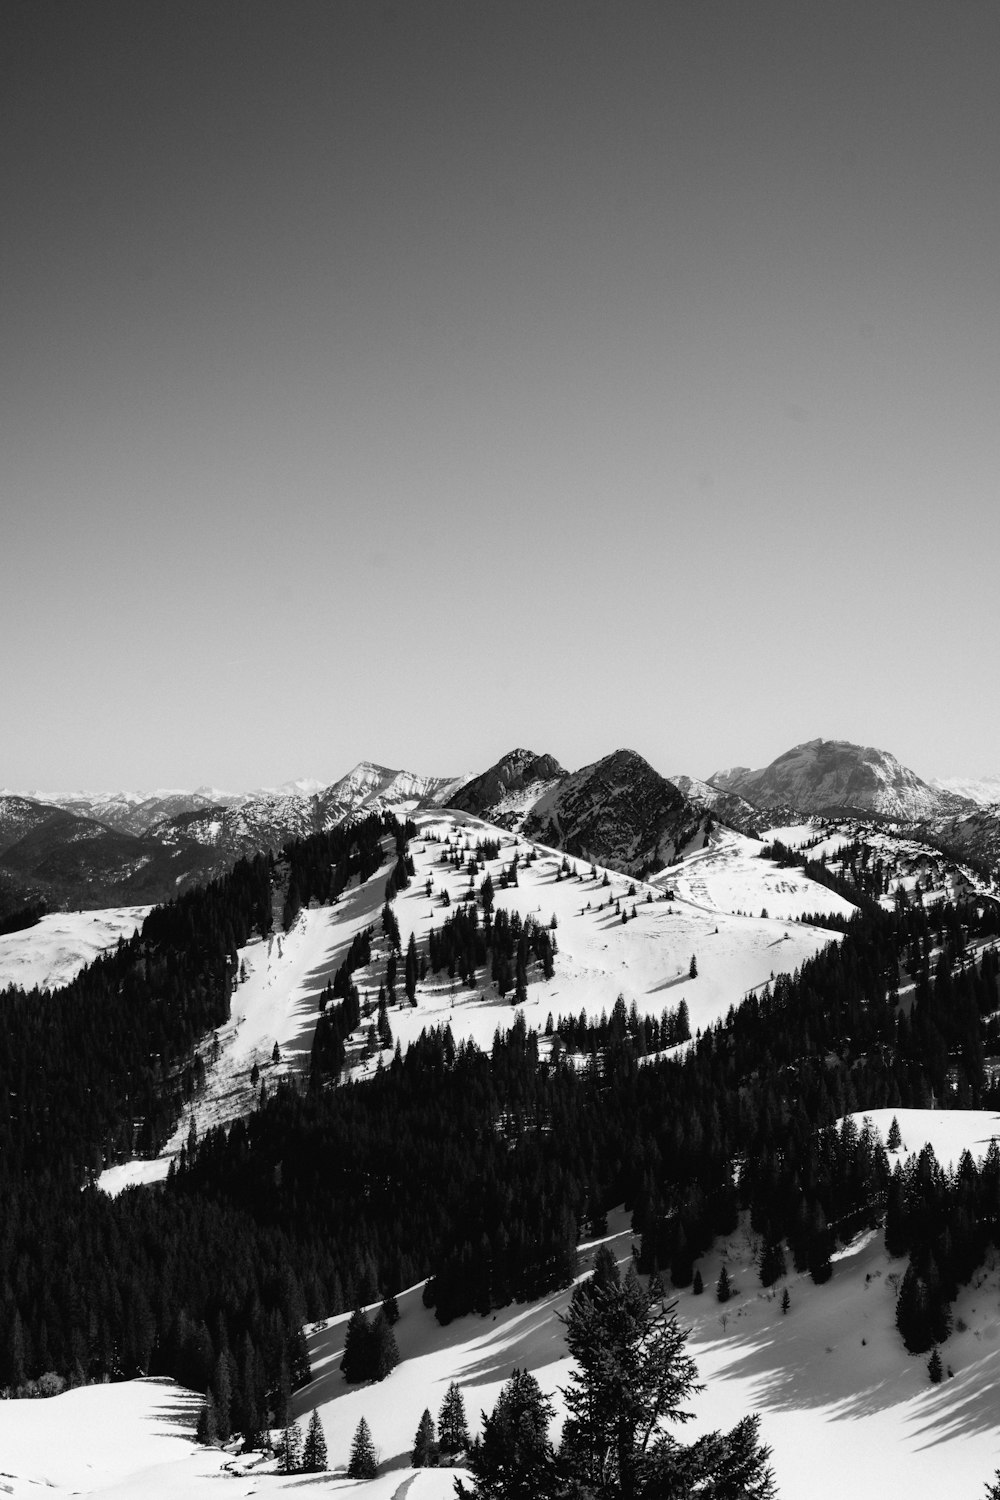 Graustufenfoto des schneebedeckten Berges